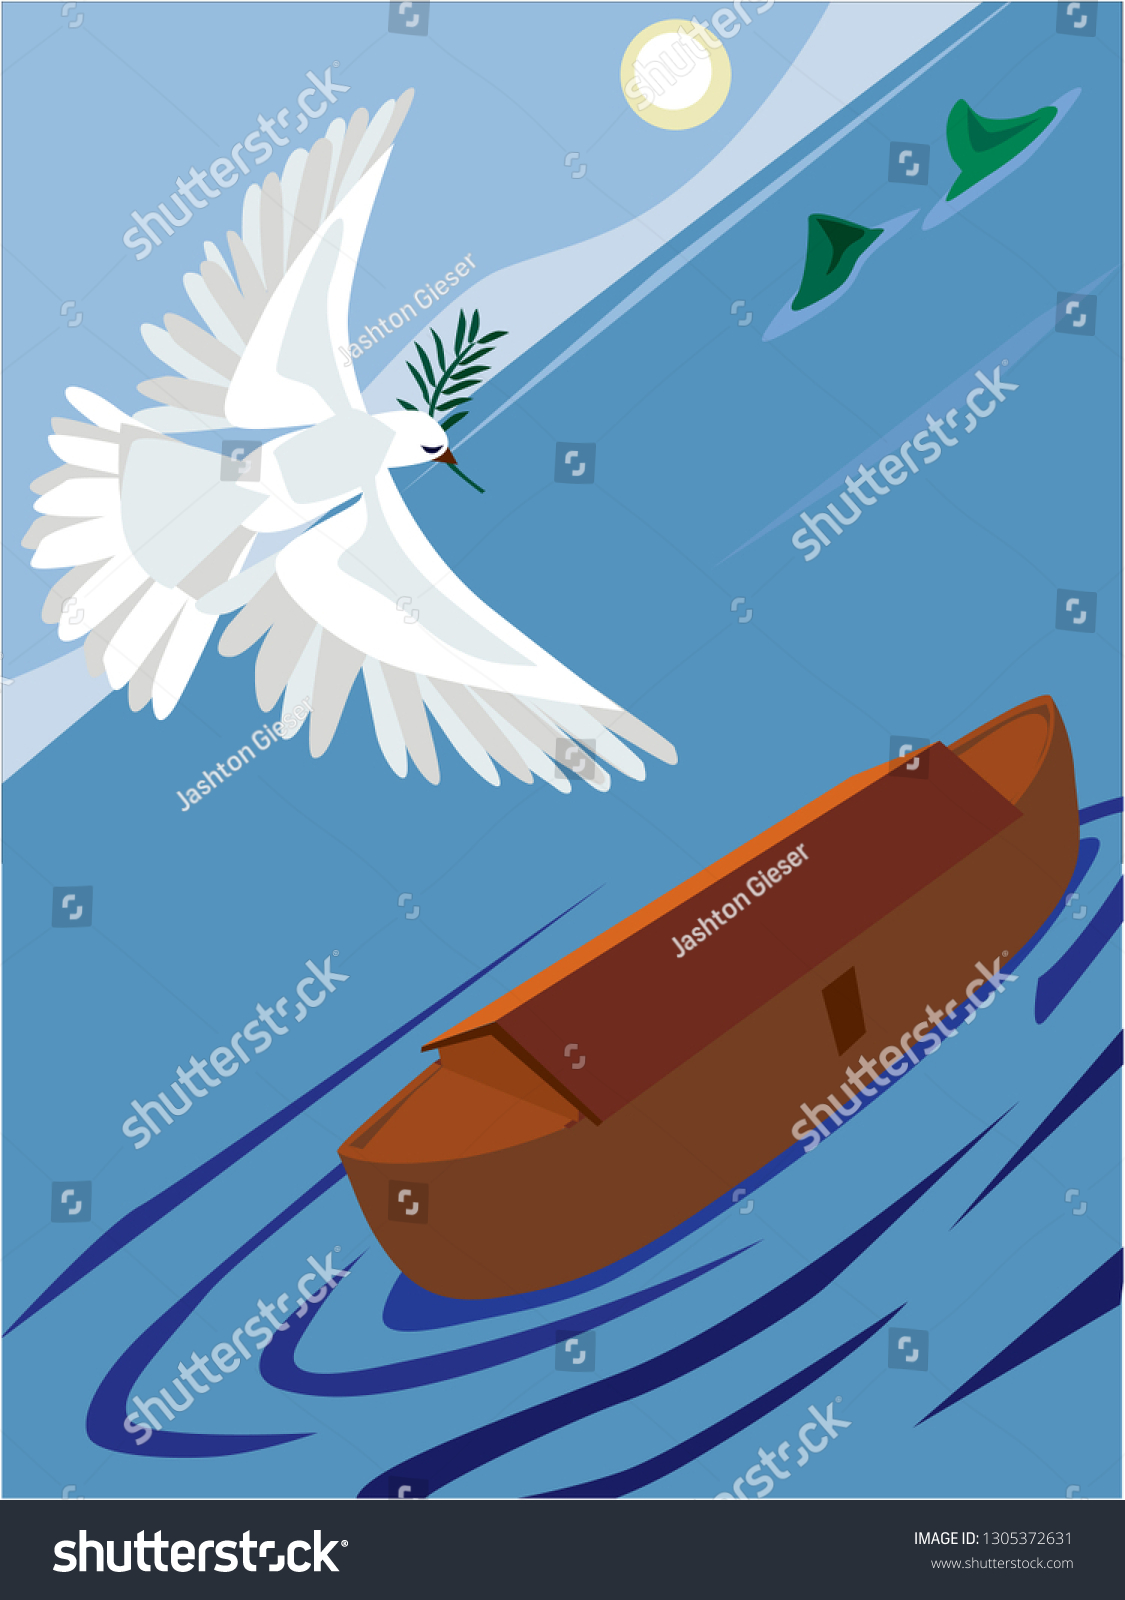 トレンディなフラットスタイルの聖書のイラストベクター画像 ノアの箱舟に戻る鳩がオリーブの枝を持つ姿を描く のベクター画像素材 ロイヤリティフリー